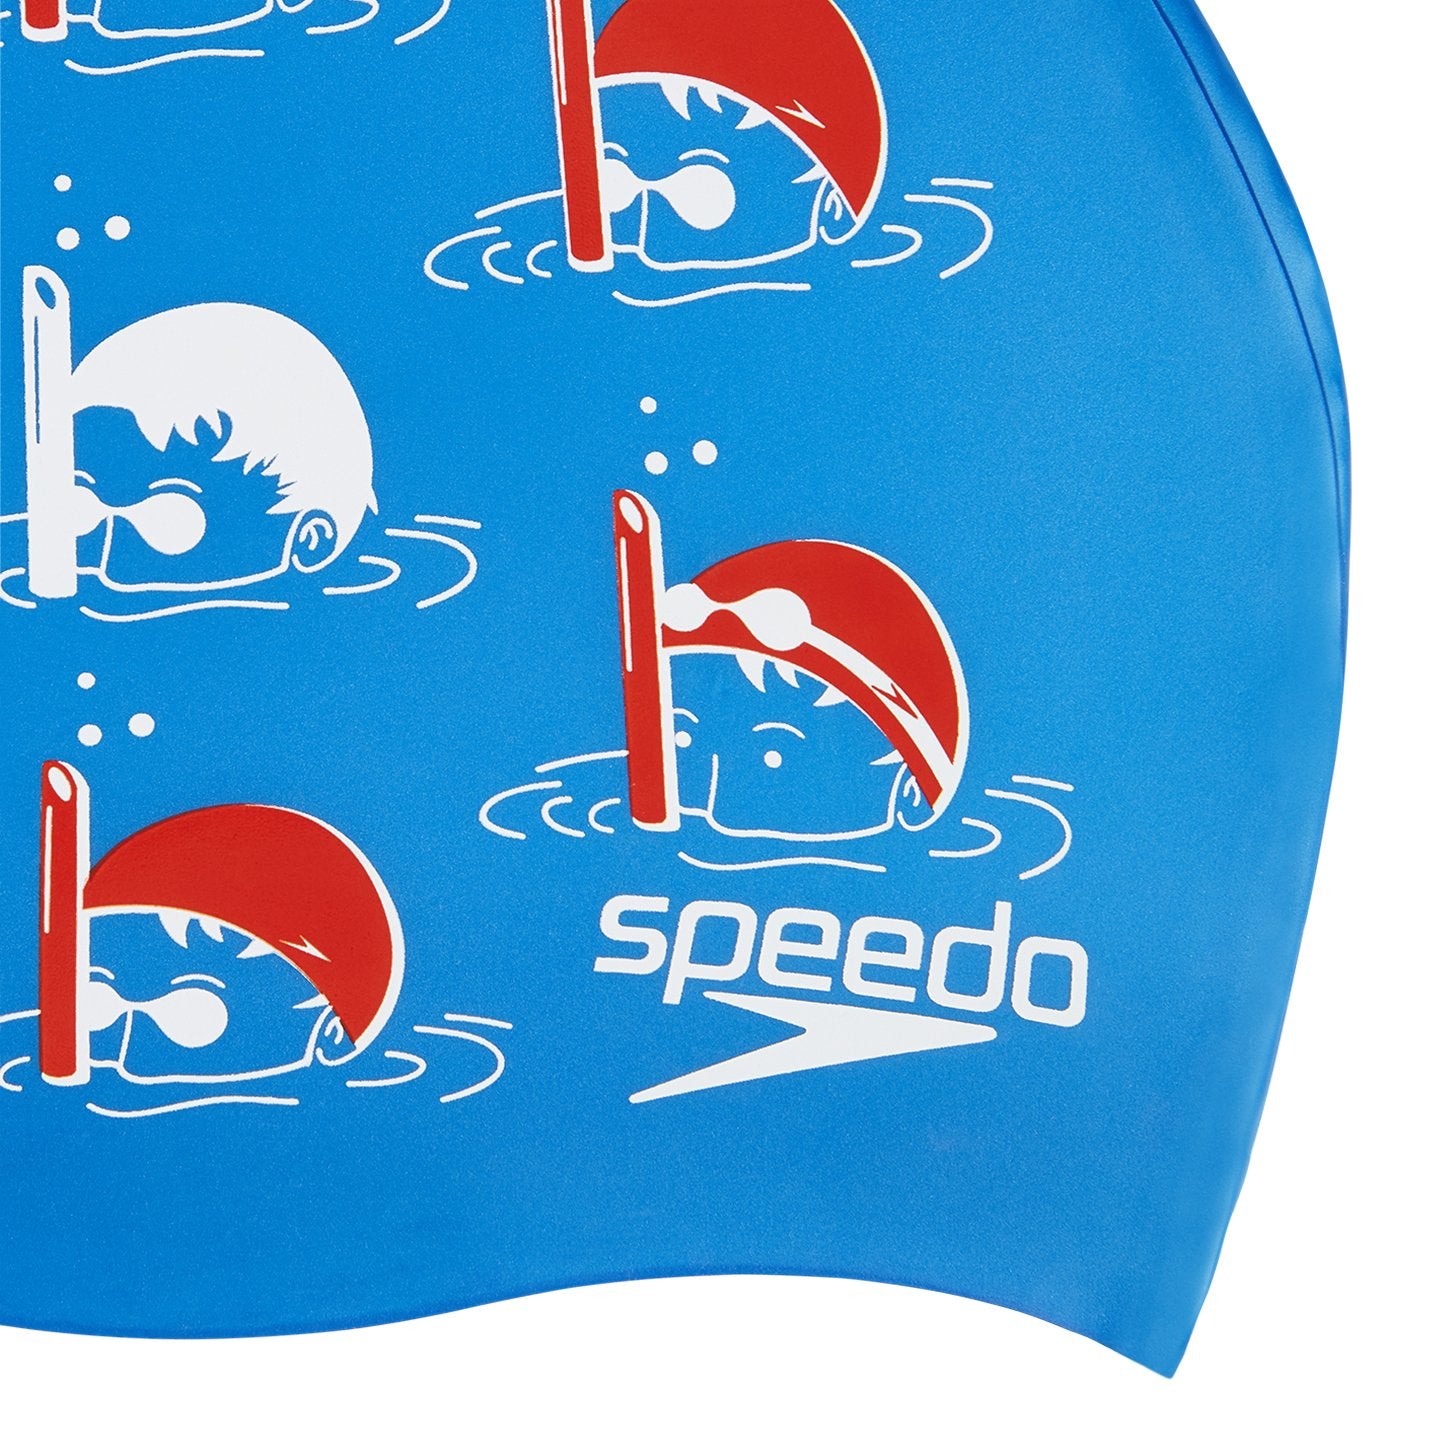 Speedo Junior Slogan Swimming Cap, Kids Free Size (Blue/Red) - Best Price online Prokicksports.com